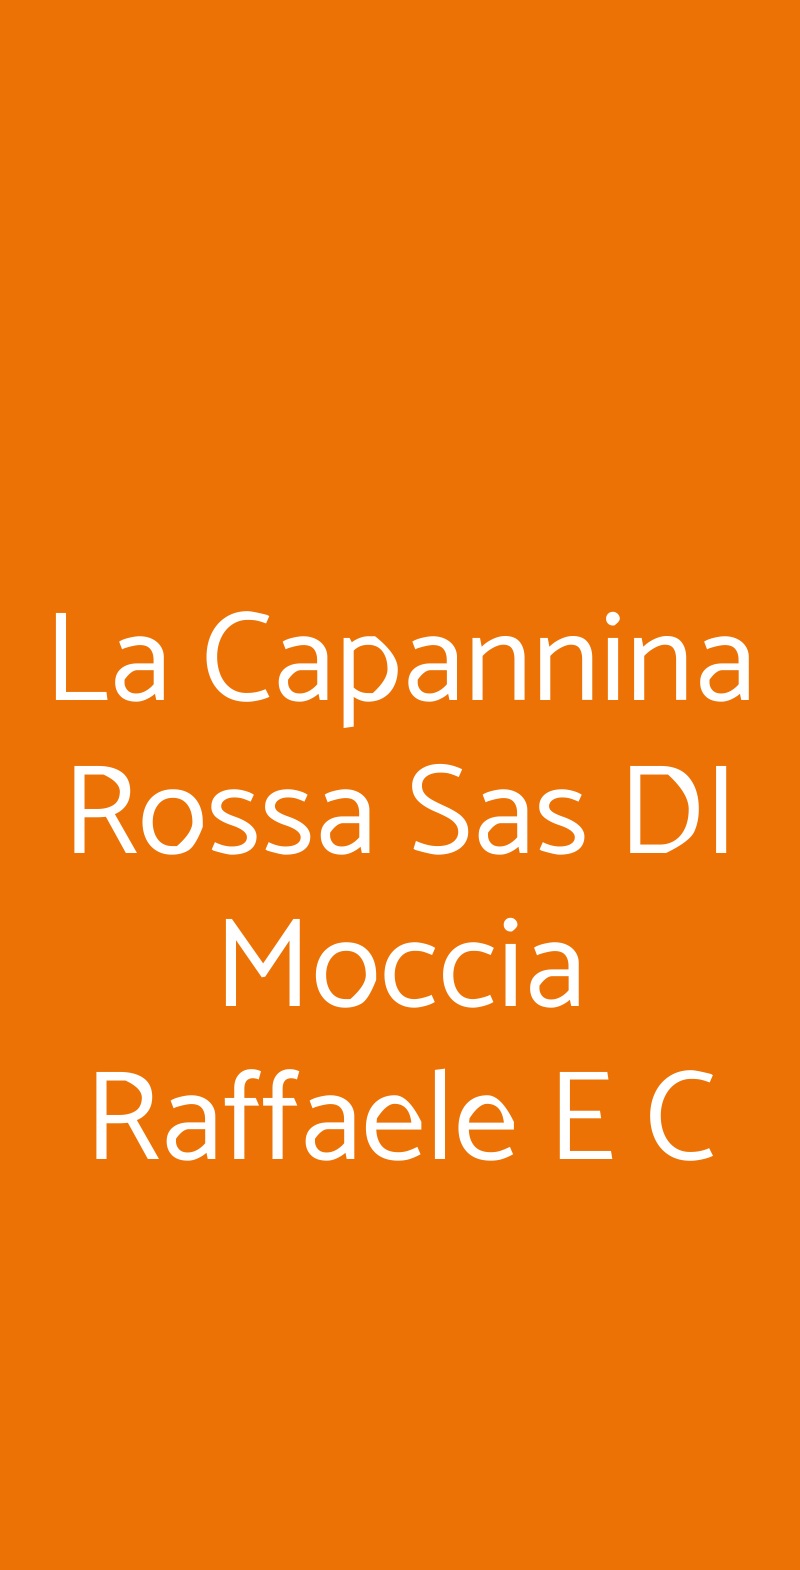 La Capannina Rossa Sas DI Moccia Raffaele E C Napoli menù 1 pagina